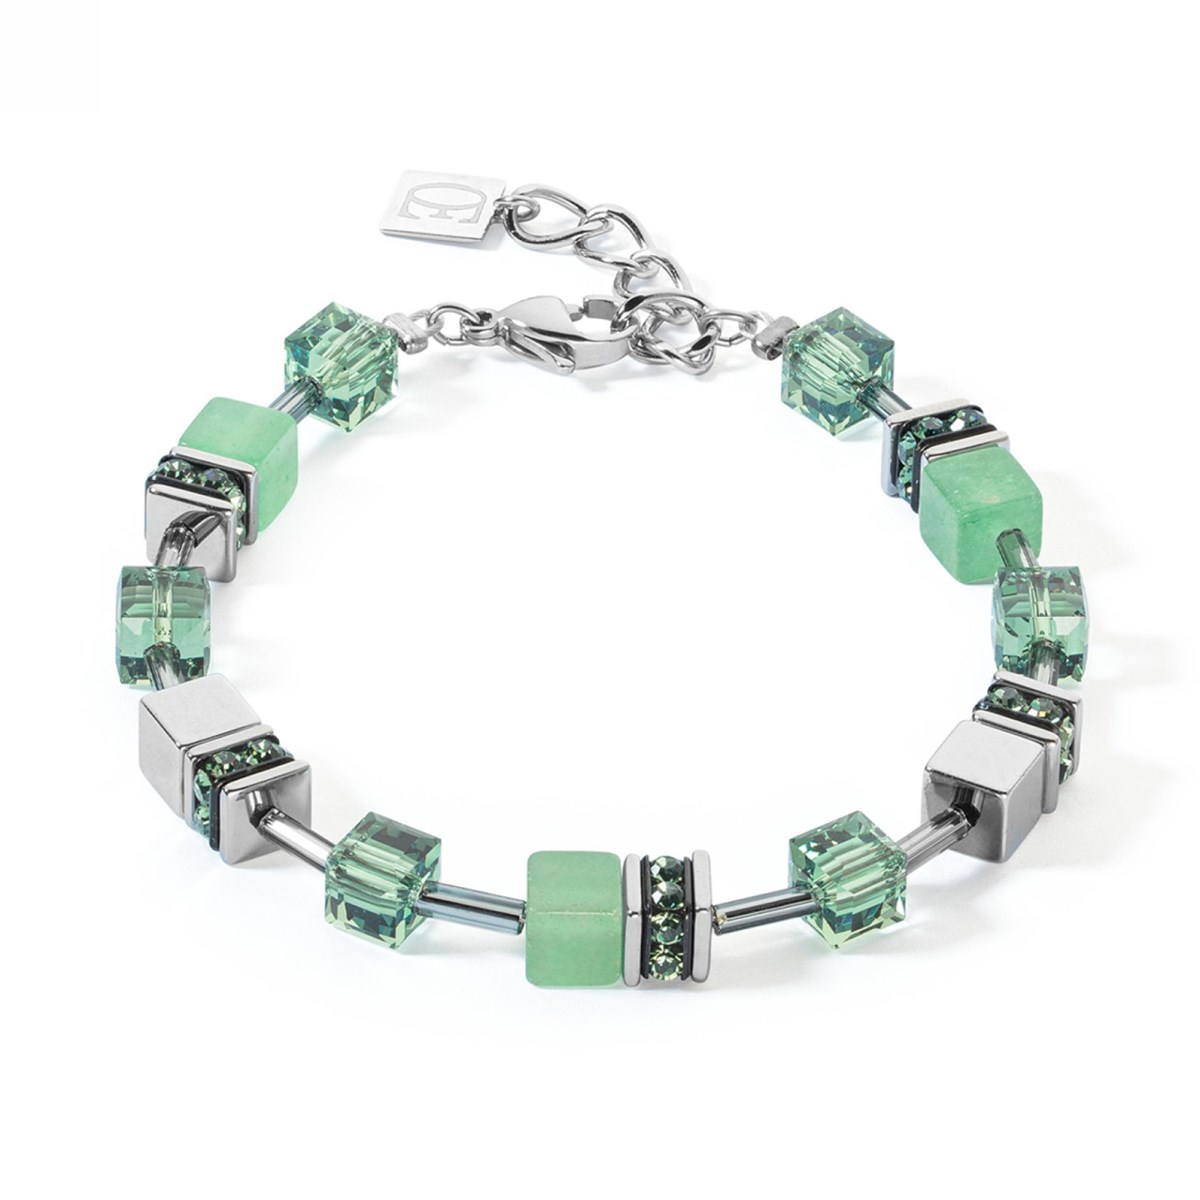 Bracelet Coeur de lion Geocube Iconic Precious vert